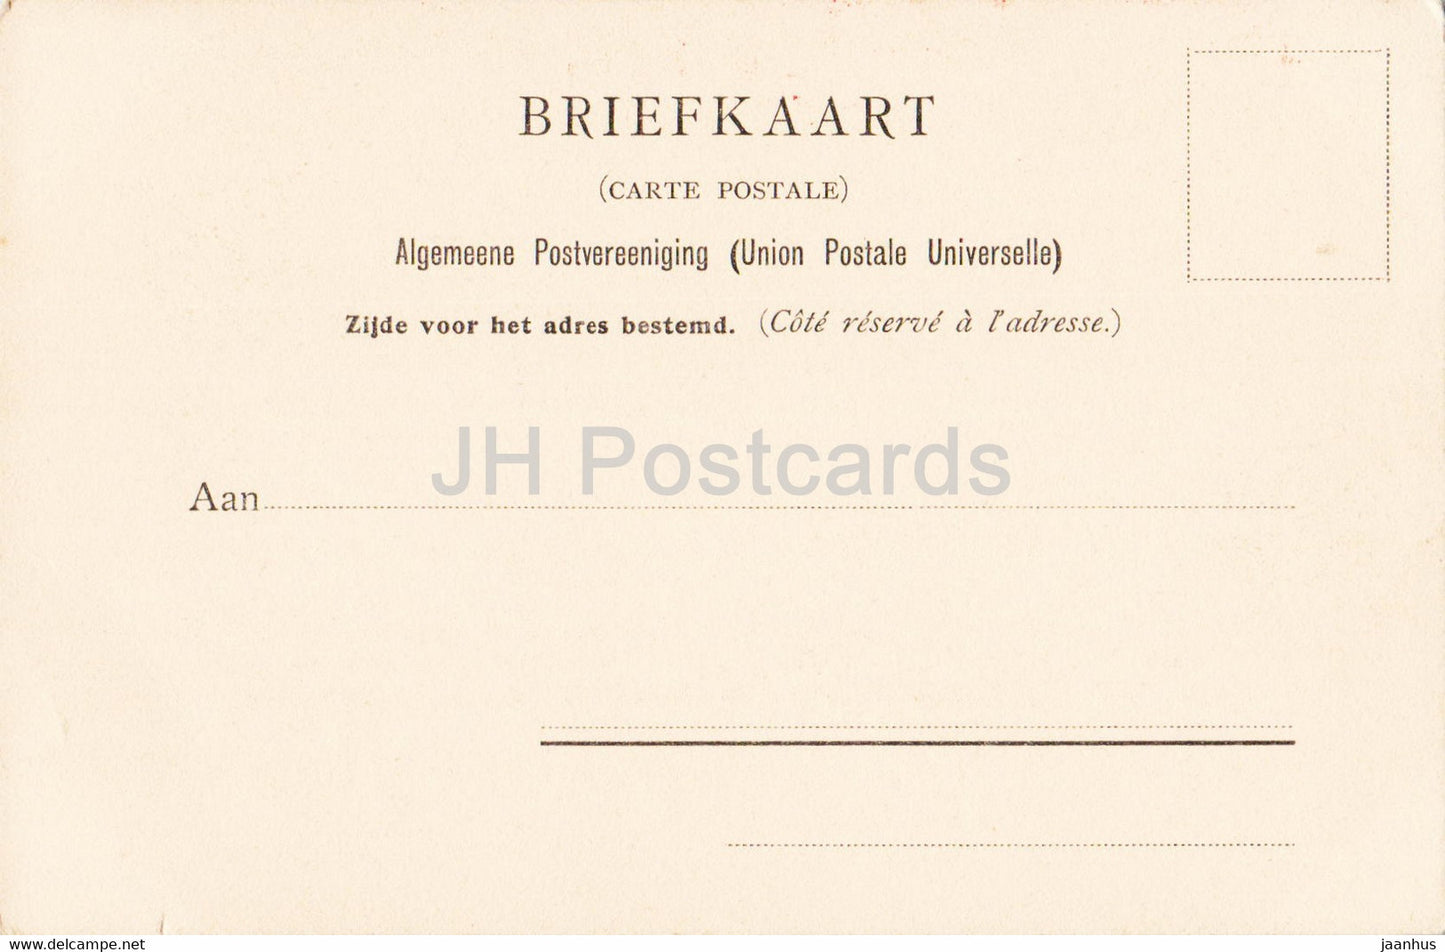 Gemälde von Rembrandt – Een studiekop – 1127 – niederländische Kunst – alte Postkarte – Niederlande – unbenutzt